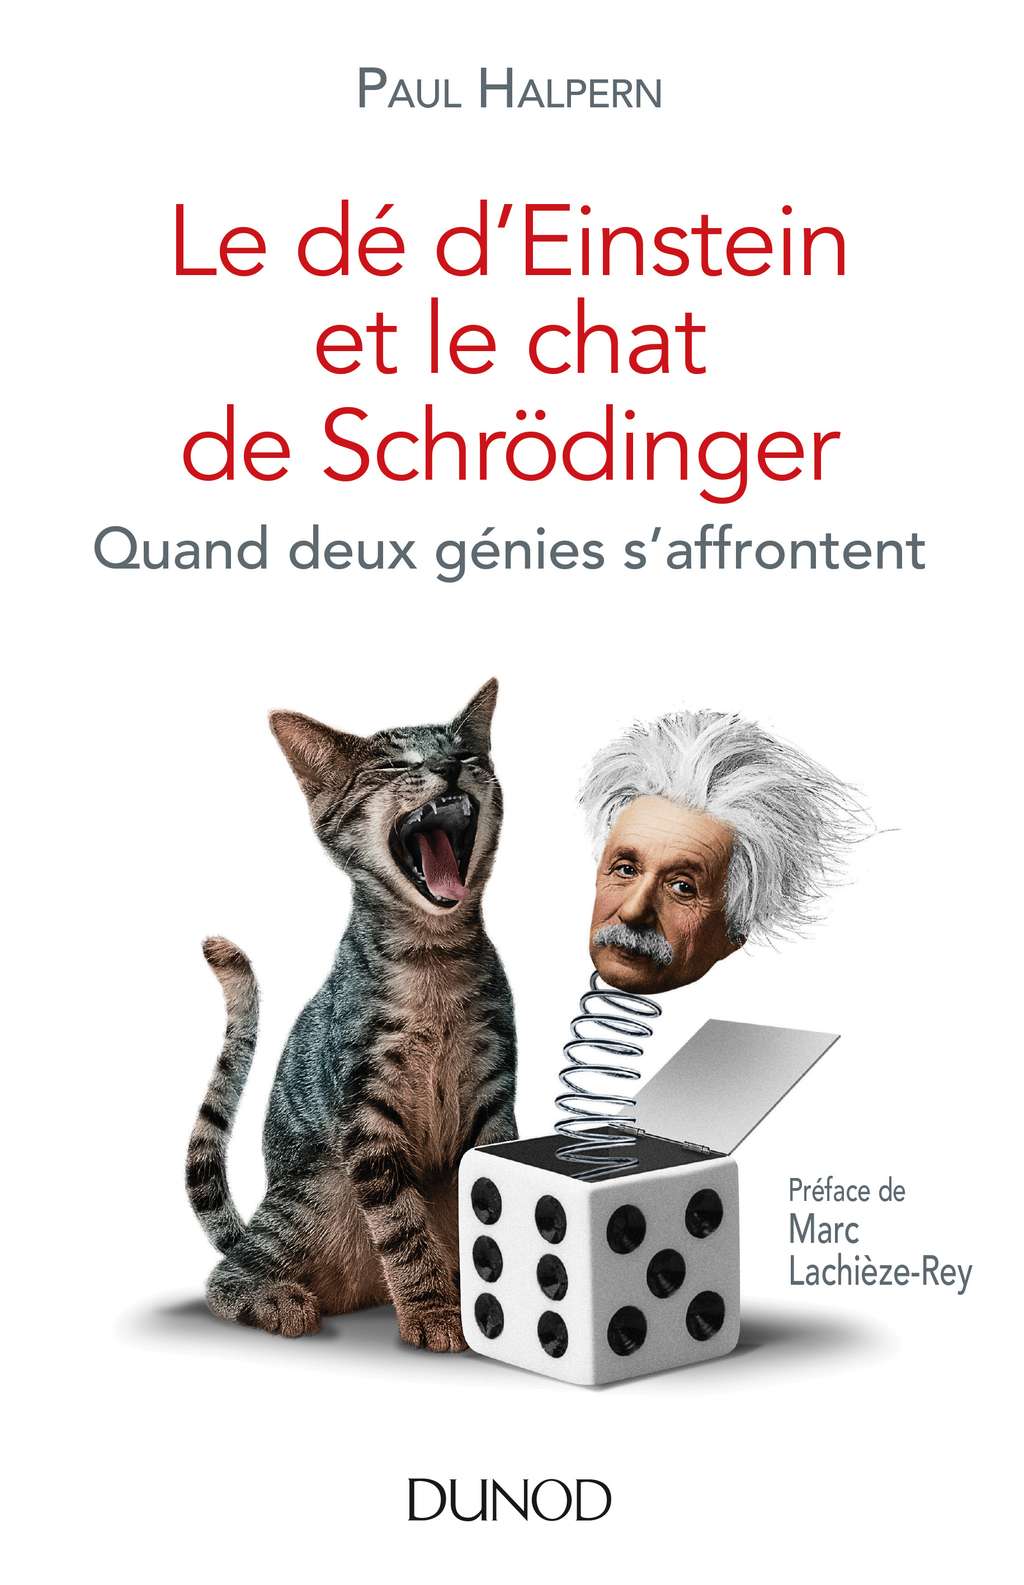 Le <a href="http://www.dunod.com/sciences-techniques/culture-scientifique/sciences-de-la-matiere-et-de-lunivers/le-de-deinstein-et-le-chat-de-schroedinge" title="Acheter le livre sur le site de Dunod" target="_blank">livre<em> Le dé d'Einstein et le chat de Schrödinger</em></a>, de Paul Halpern, revient sur la relation liant Albert Einstein et Erwin Schrödinger. Il raconte comment ces deux génies ont bouleversé la physique. © Dunod, tous droits réservés